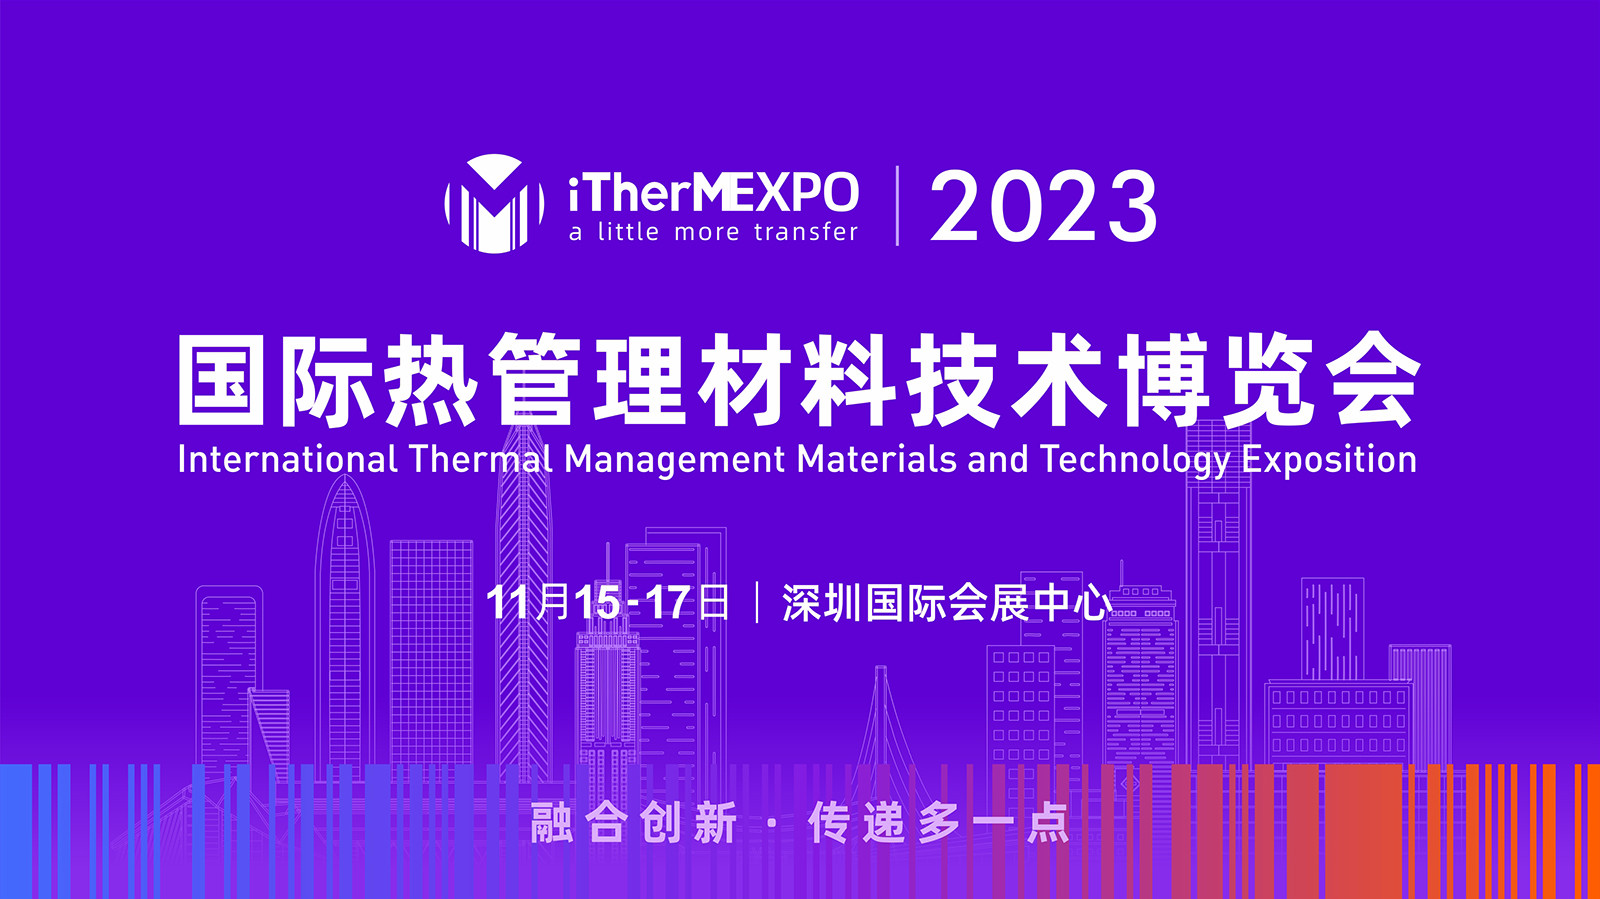 第四届热管理材料与技术大会